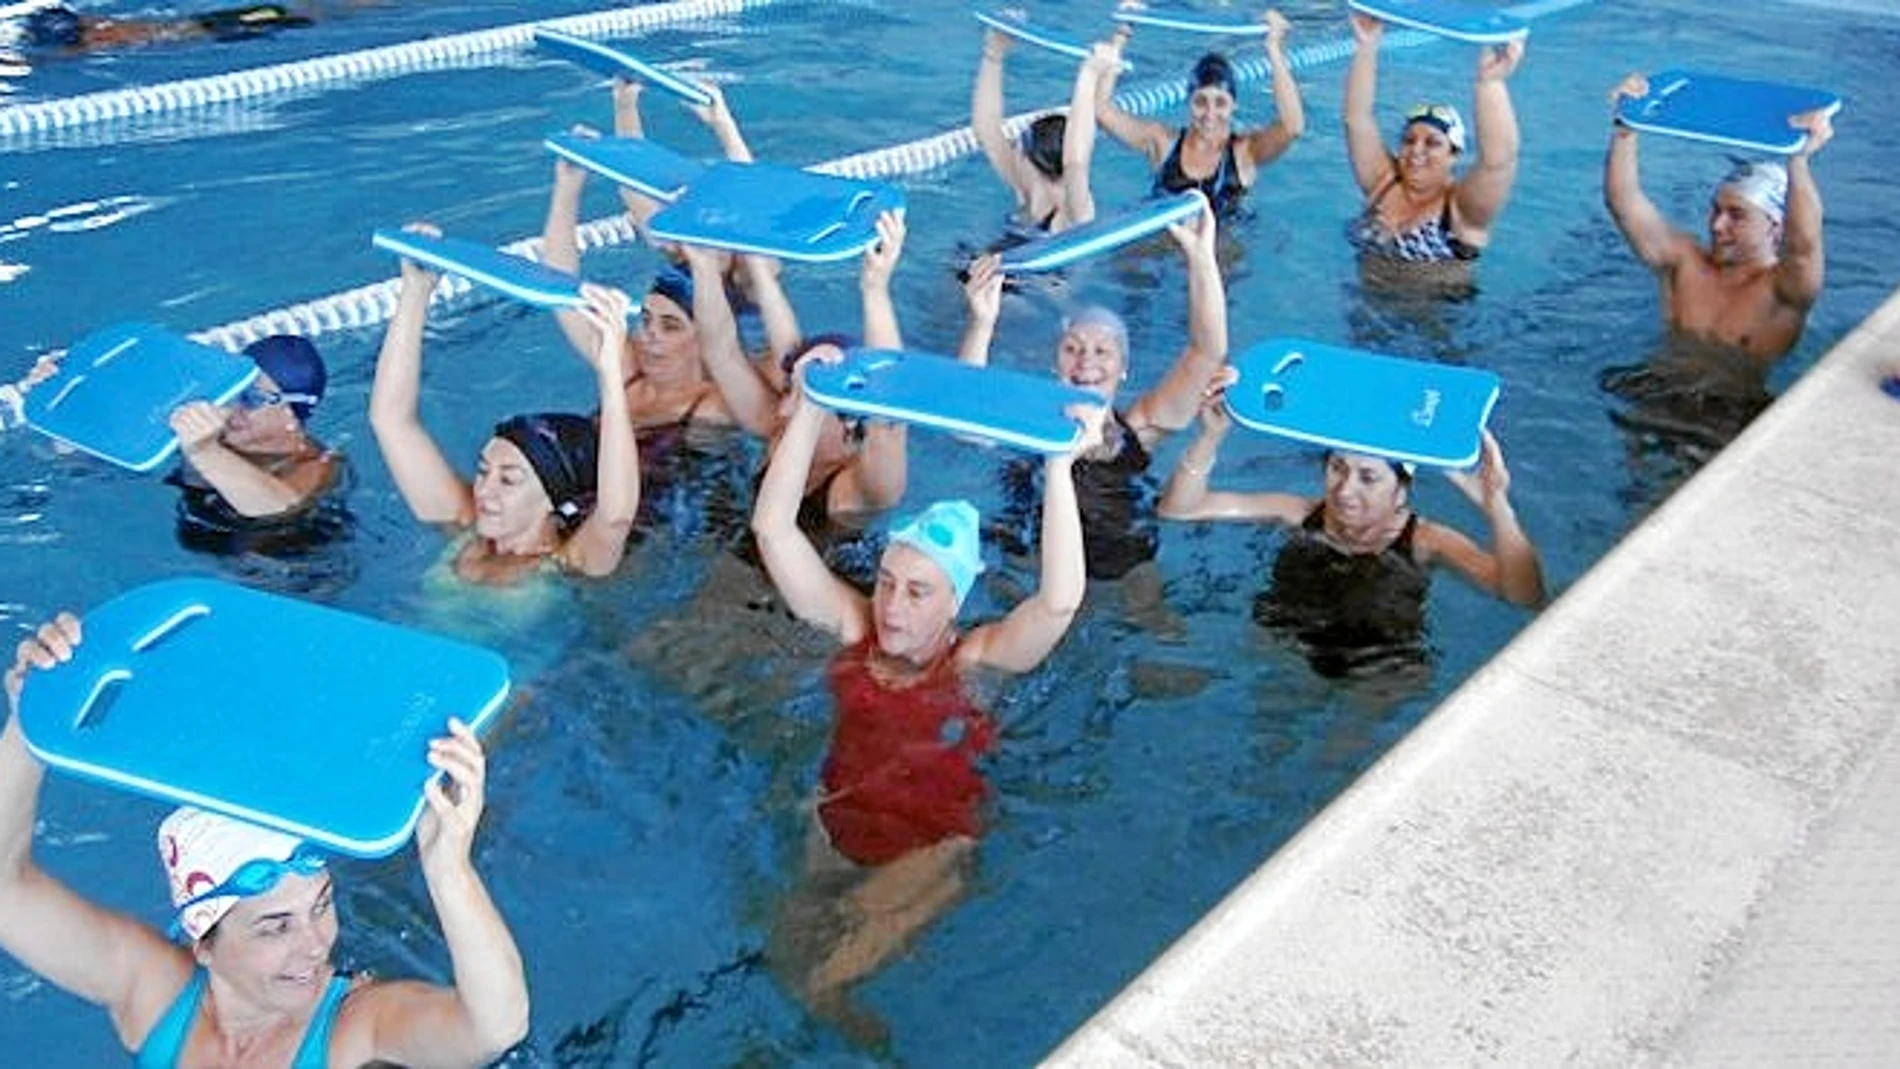 La entidad ofrece la posibilidad tanto de acudir al gimnasio como de realizar ejercicios en el agua